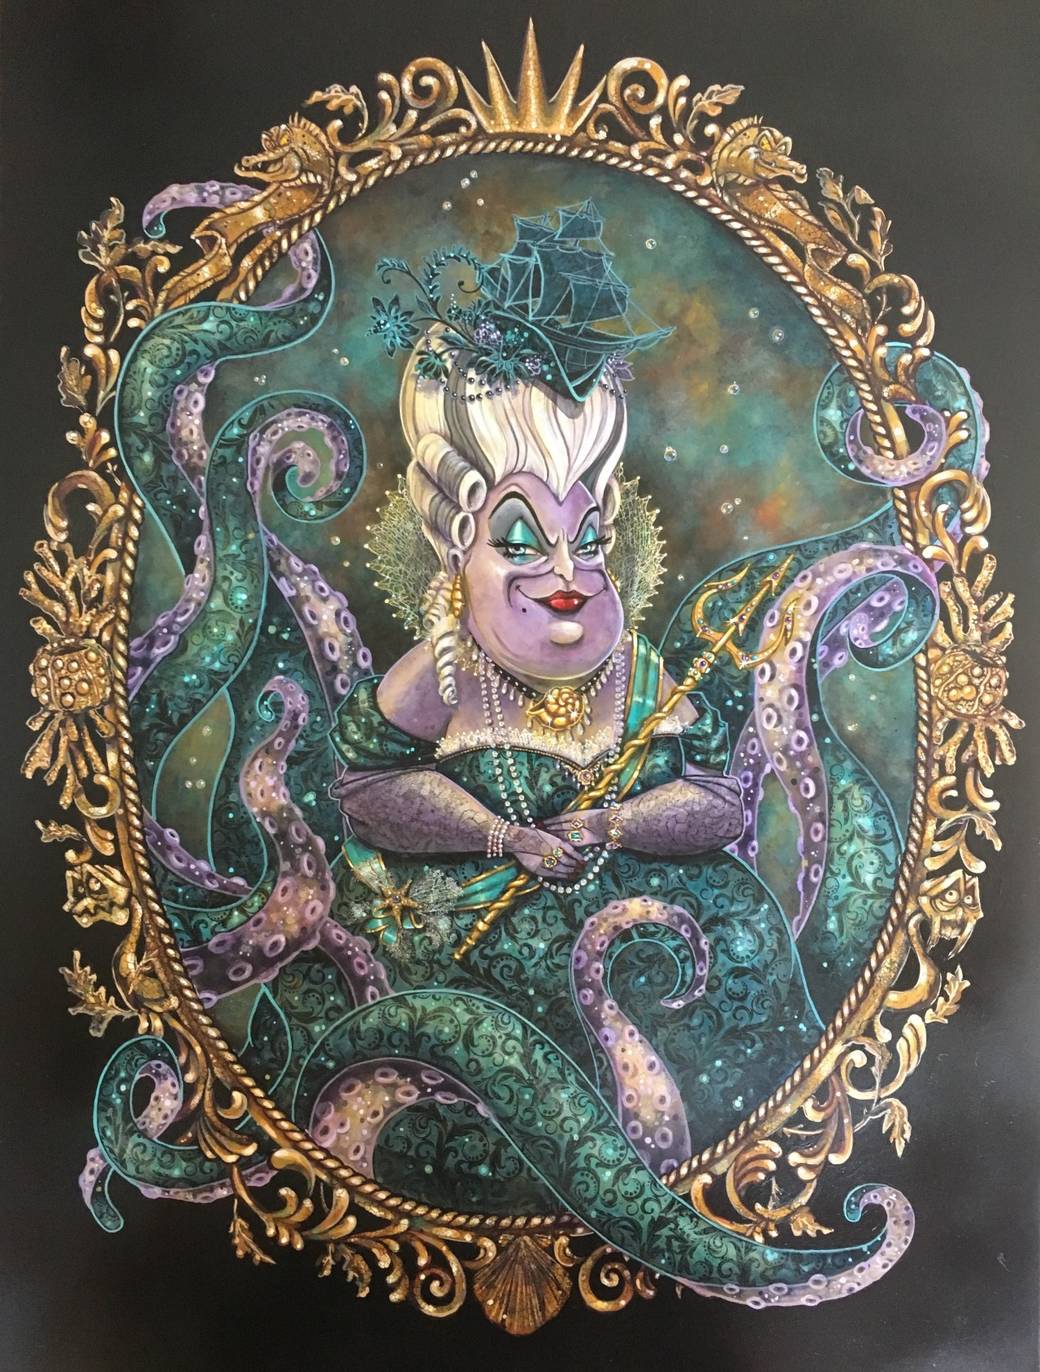 Ursula portrait by John Coulter